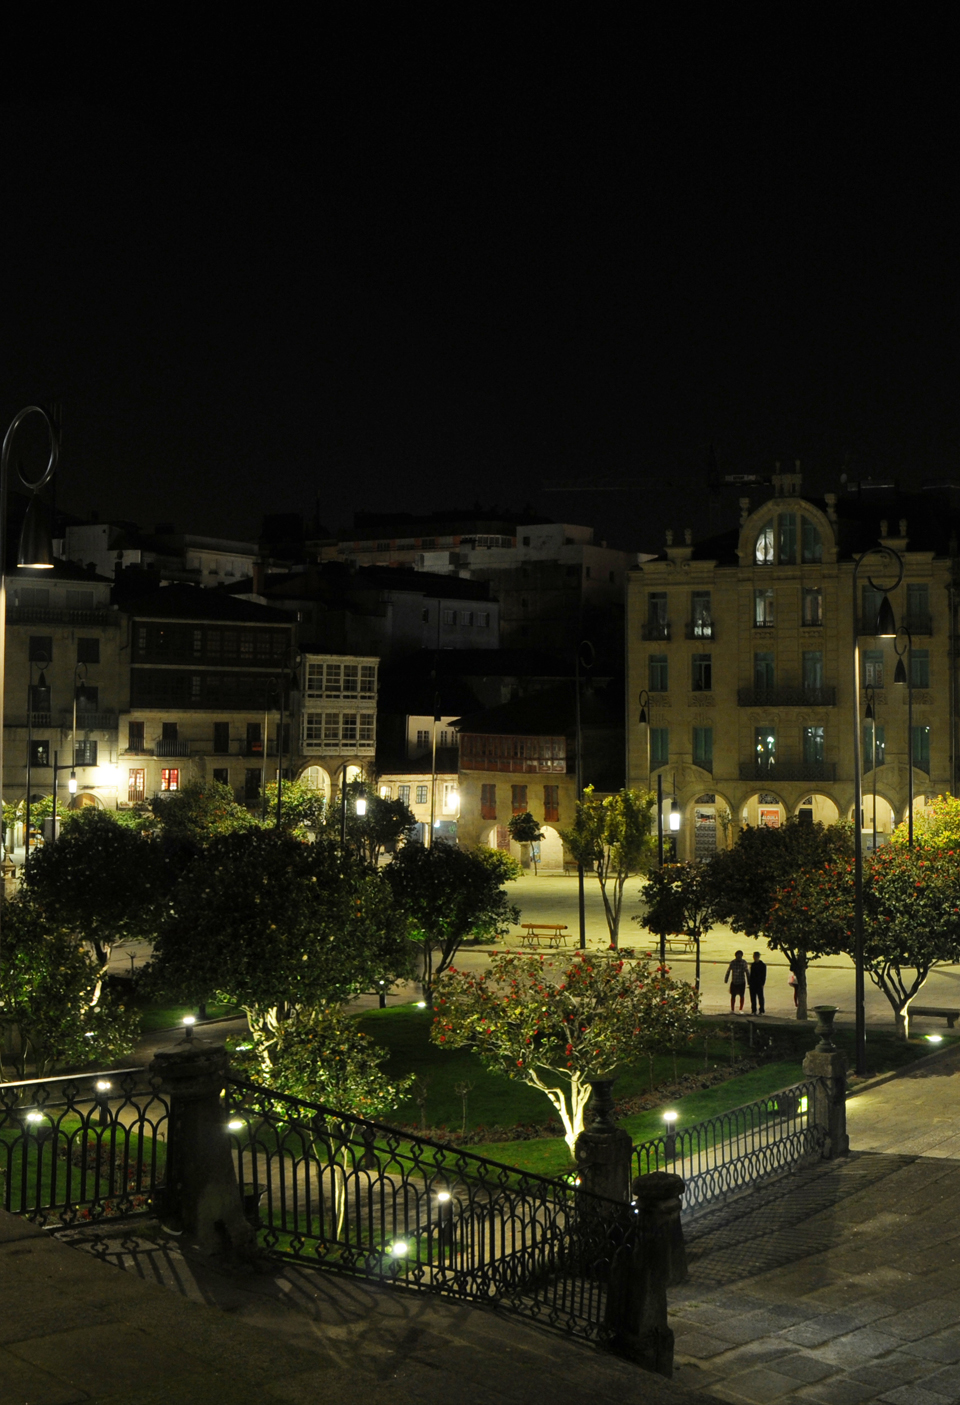 Proyecto de iluminación del Centro Histórico de Pontevedra